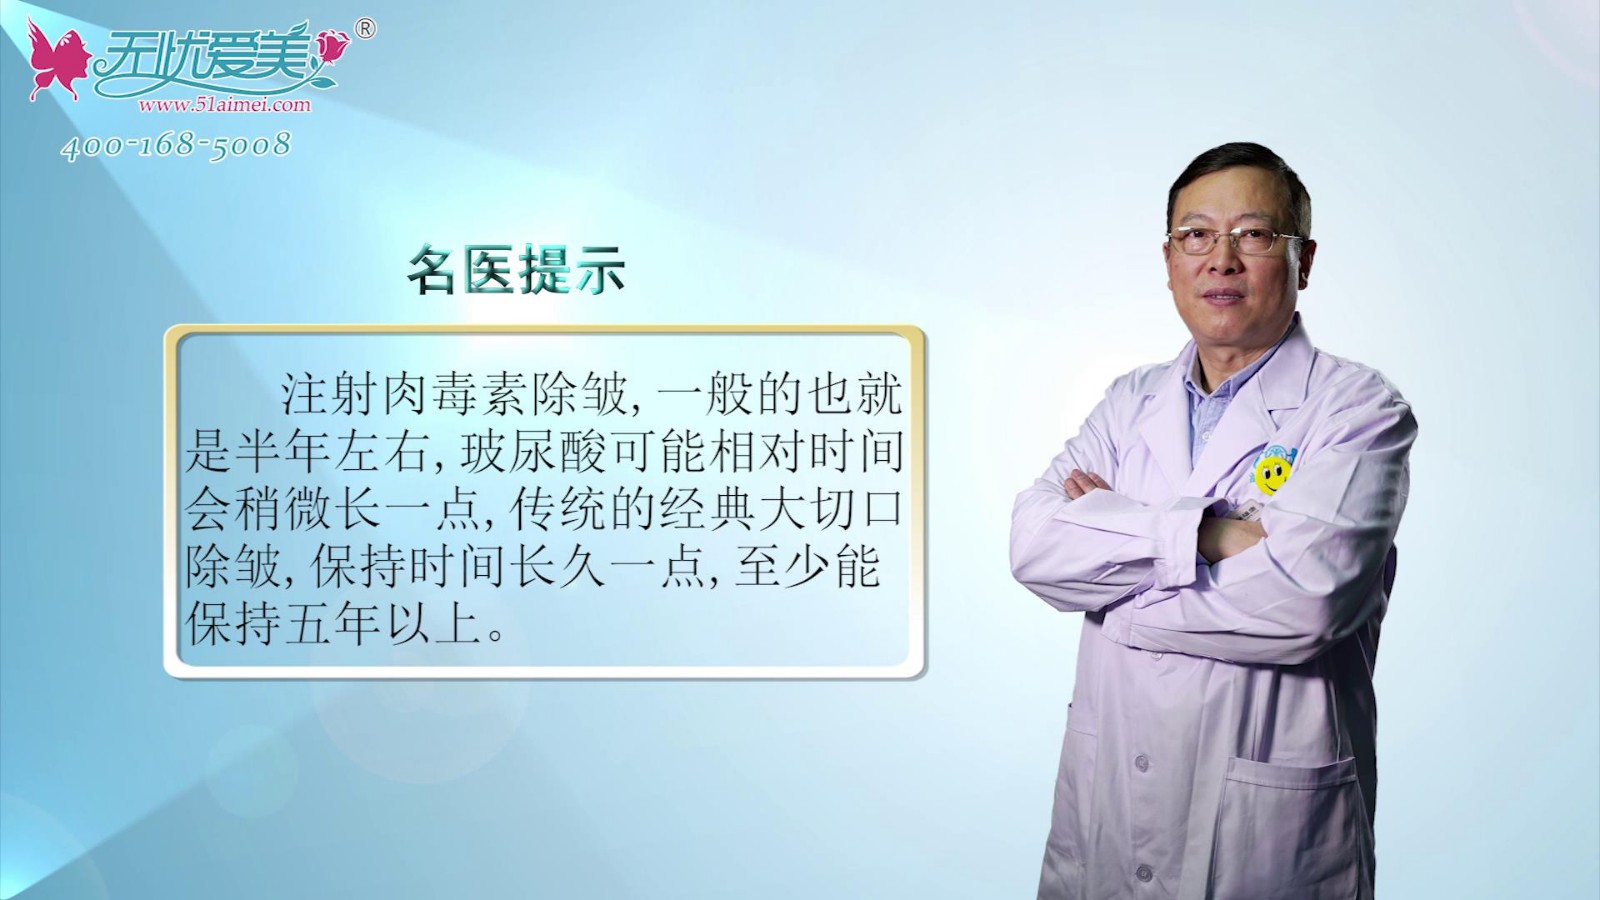 什么是面部大拉皮除皱?来看北京海医悦美刘文阁告知视频